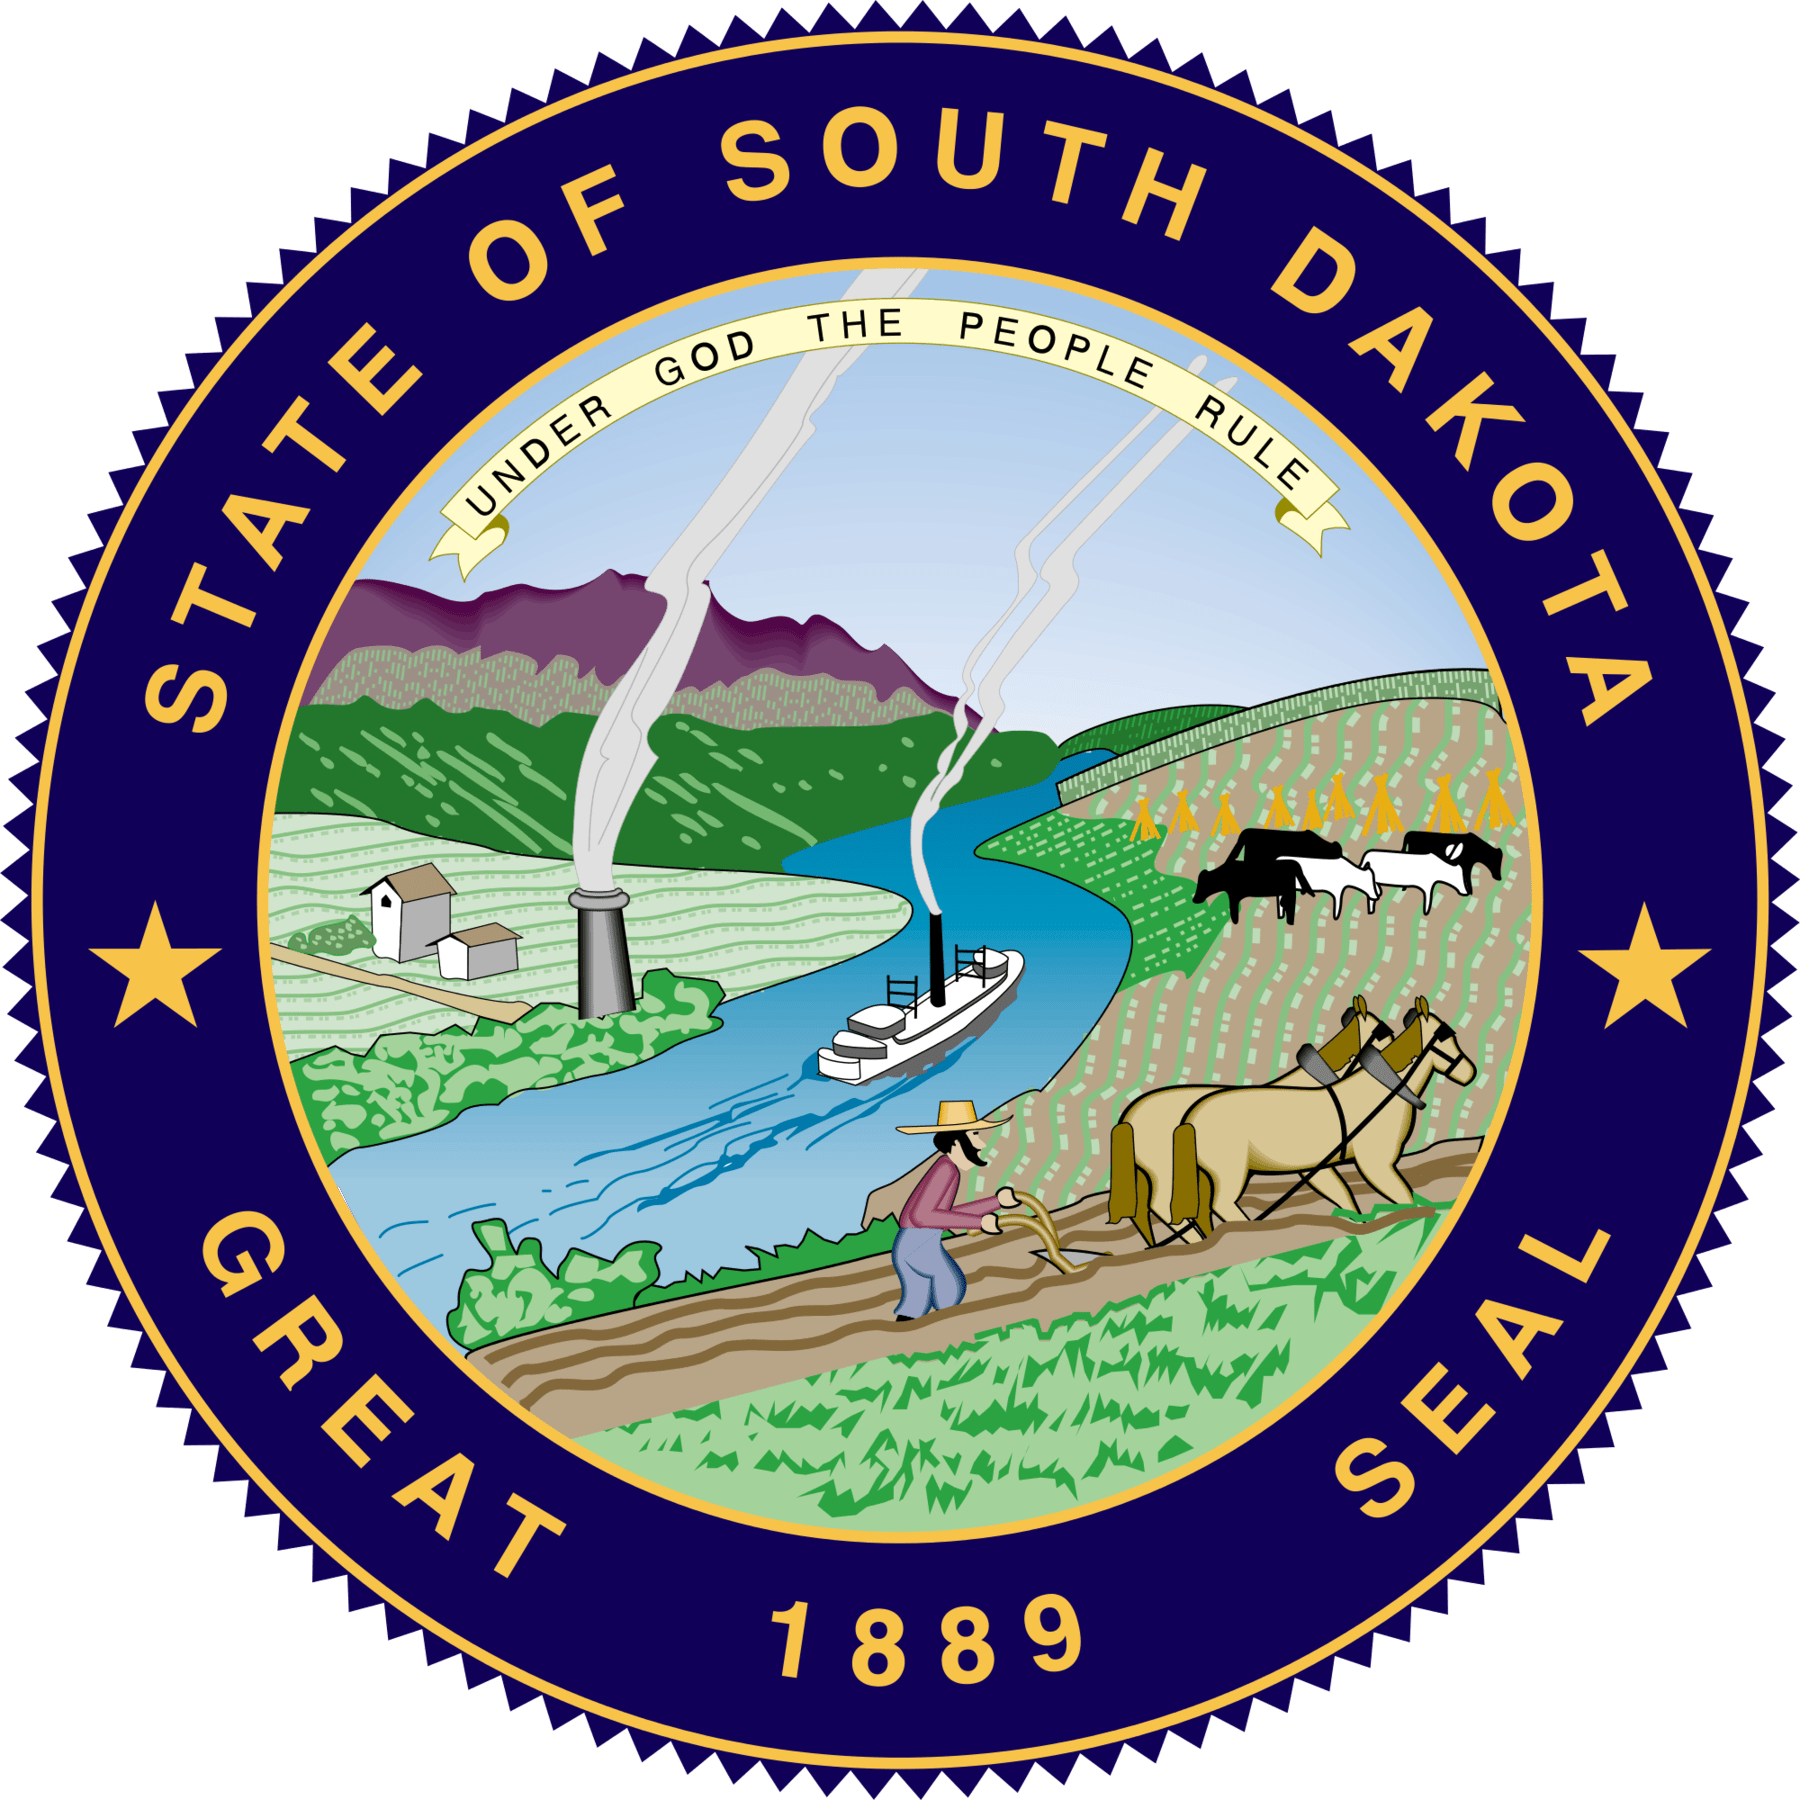 South Dakota 529 Plan